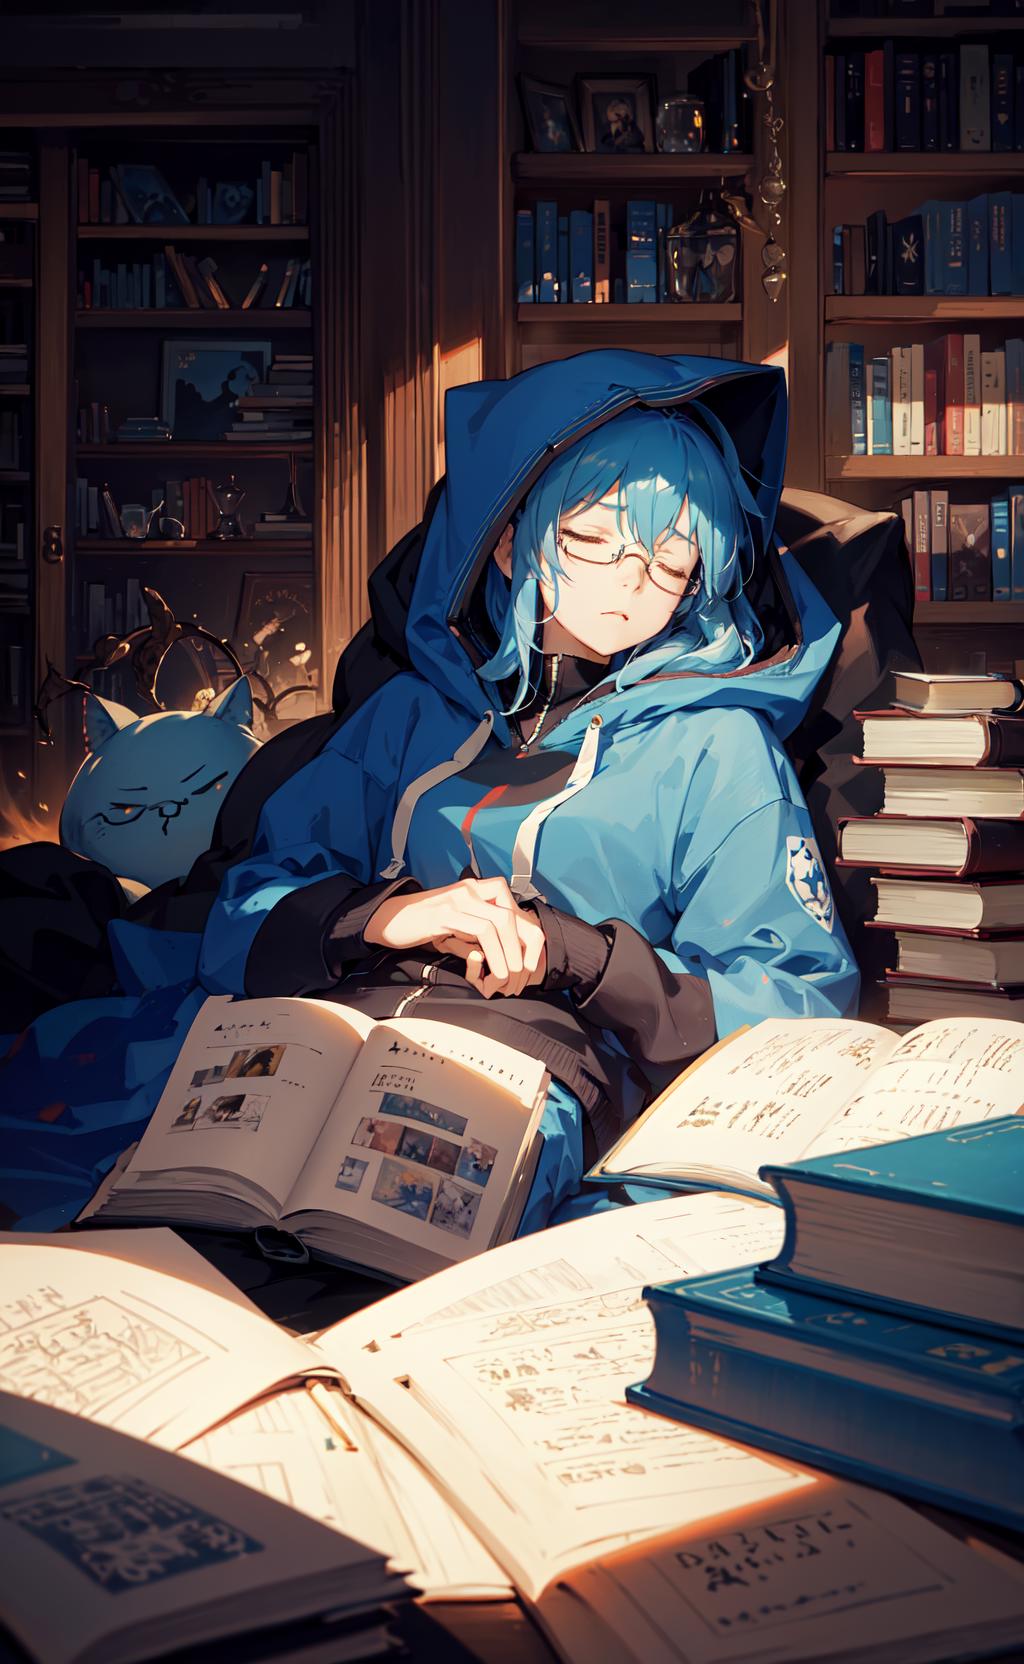 Blue Hair Anime GIFs | Tenor